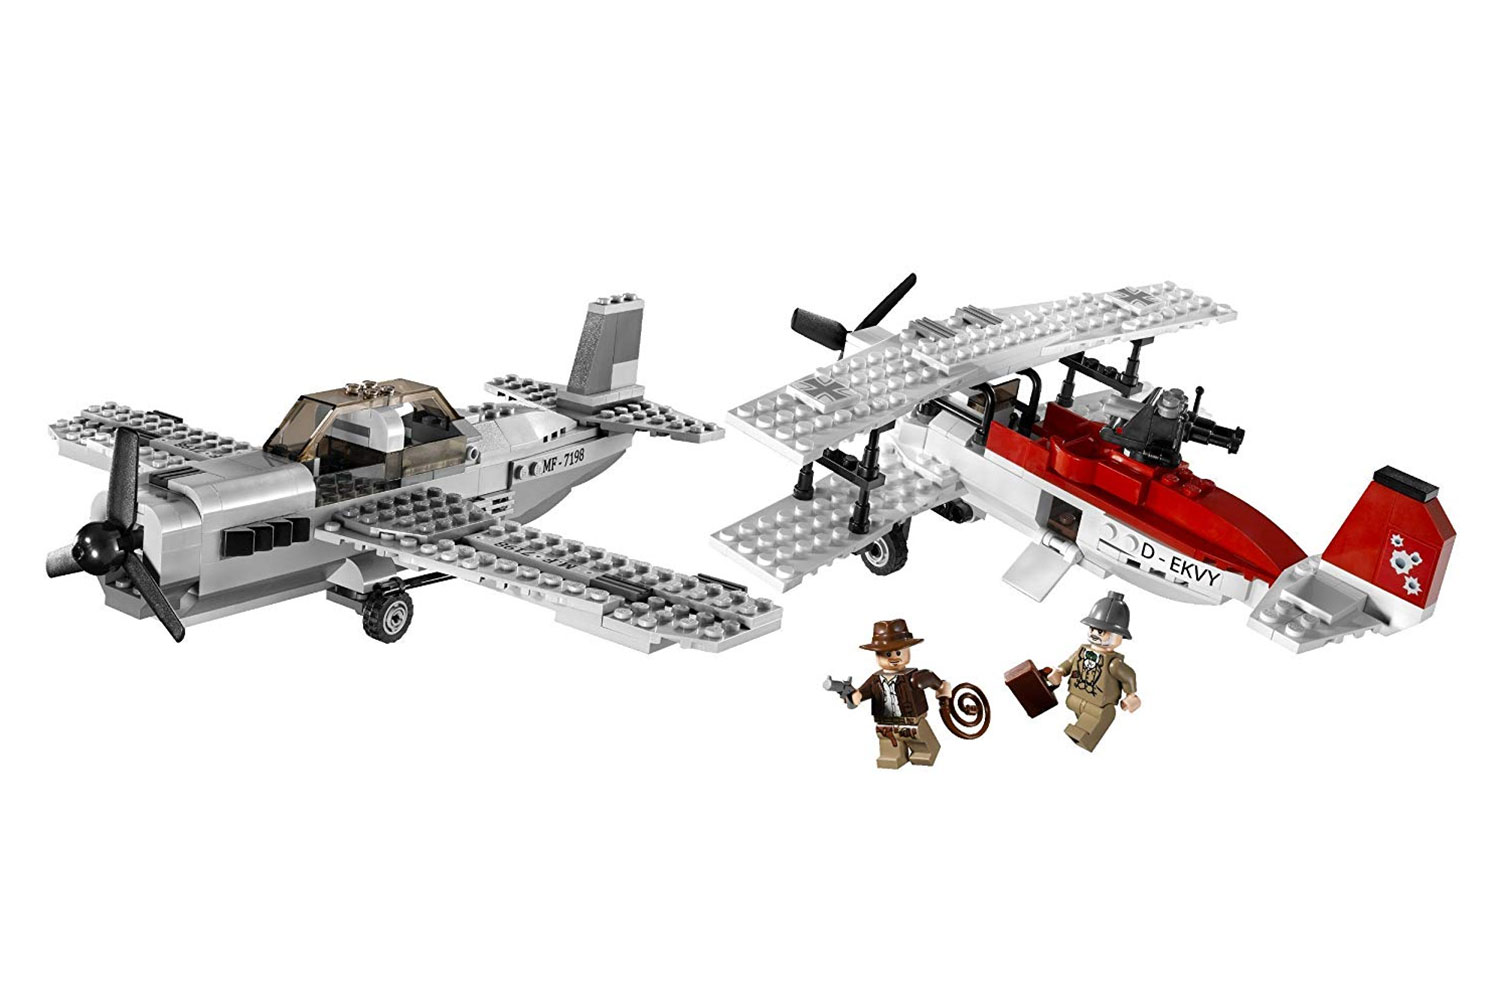 Mini Lego Airbus  Lego projects, Micro lego, Lego diy